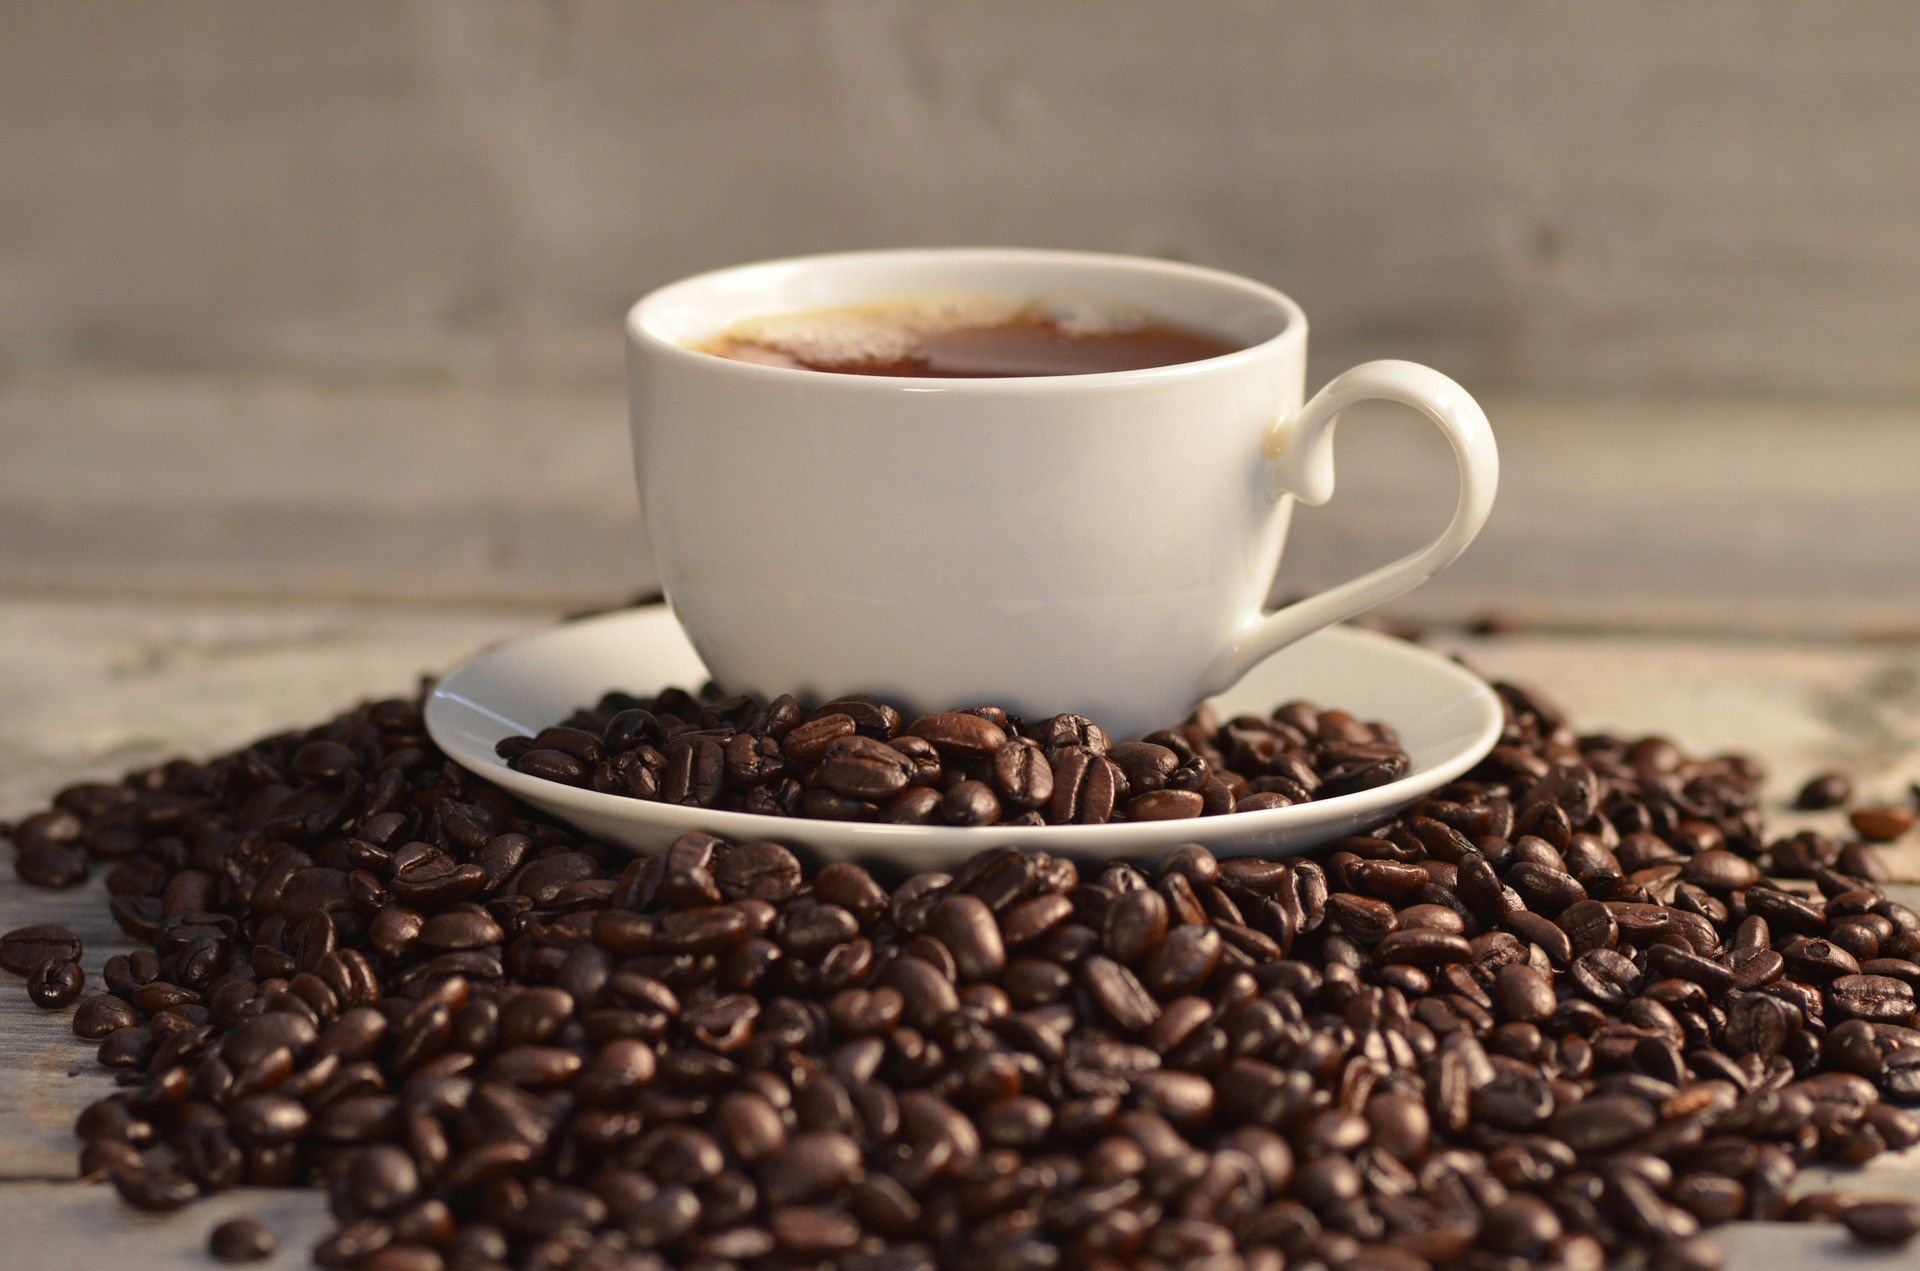 När det gäller penningmängden ligger kaffet på nummer två på den mest handlade råvarulistan. Kaffe är kanske en av de mest intressanta, men ändå volatila råvarorna att handla. Men hur handlar man kaffe?